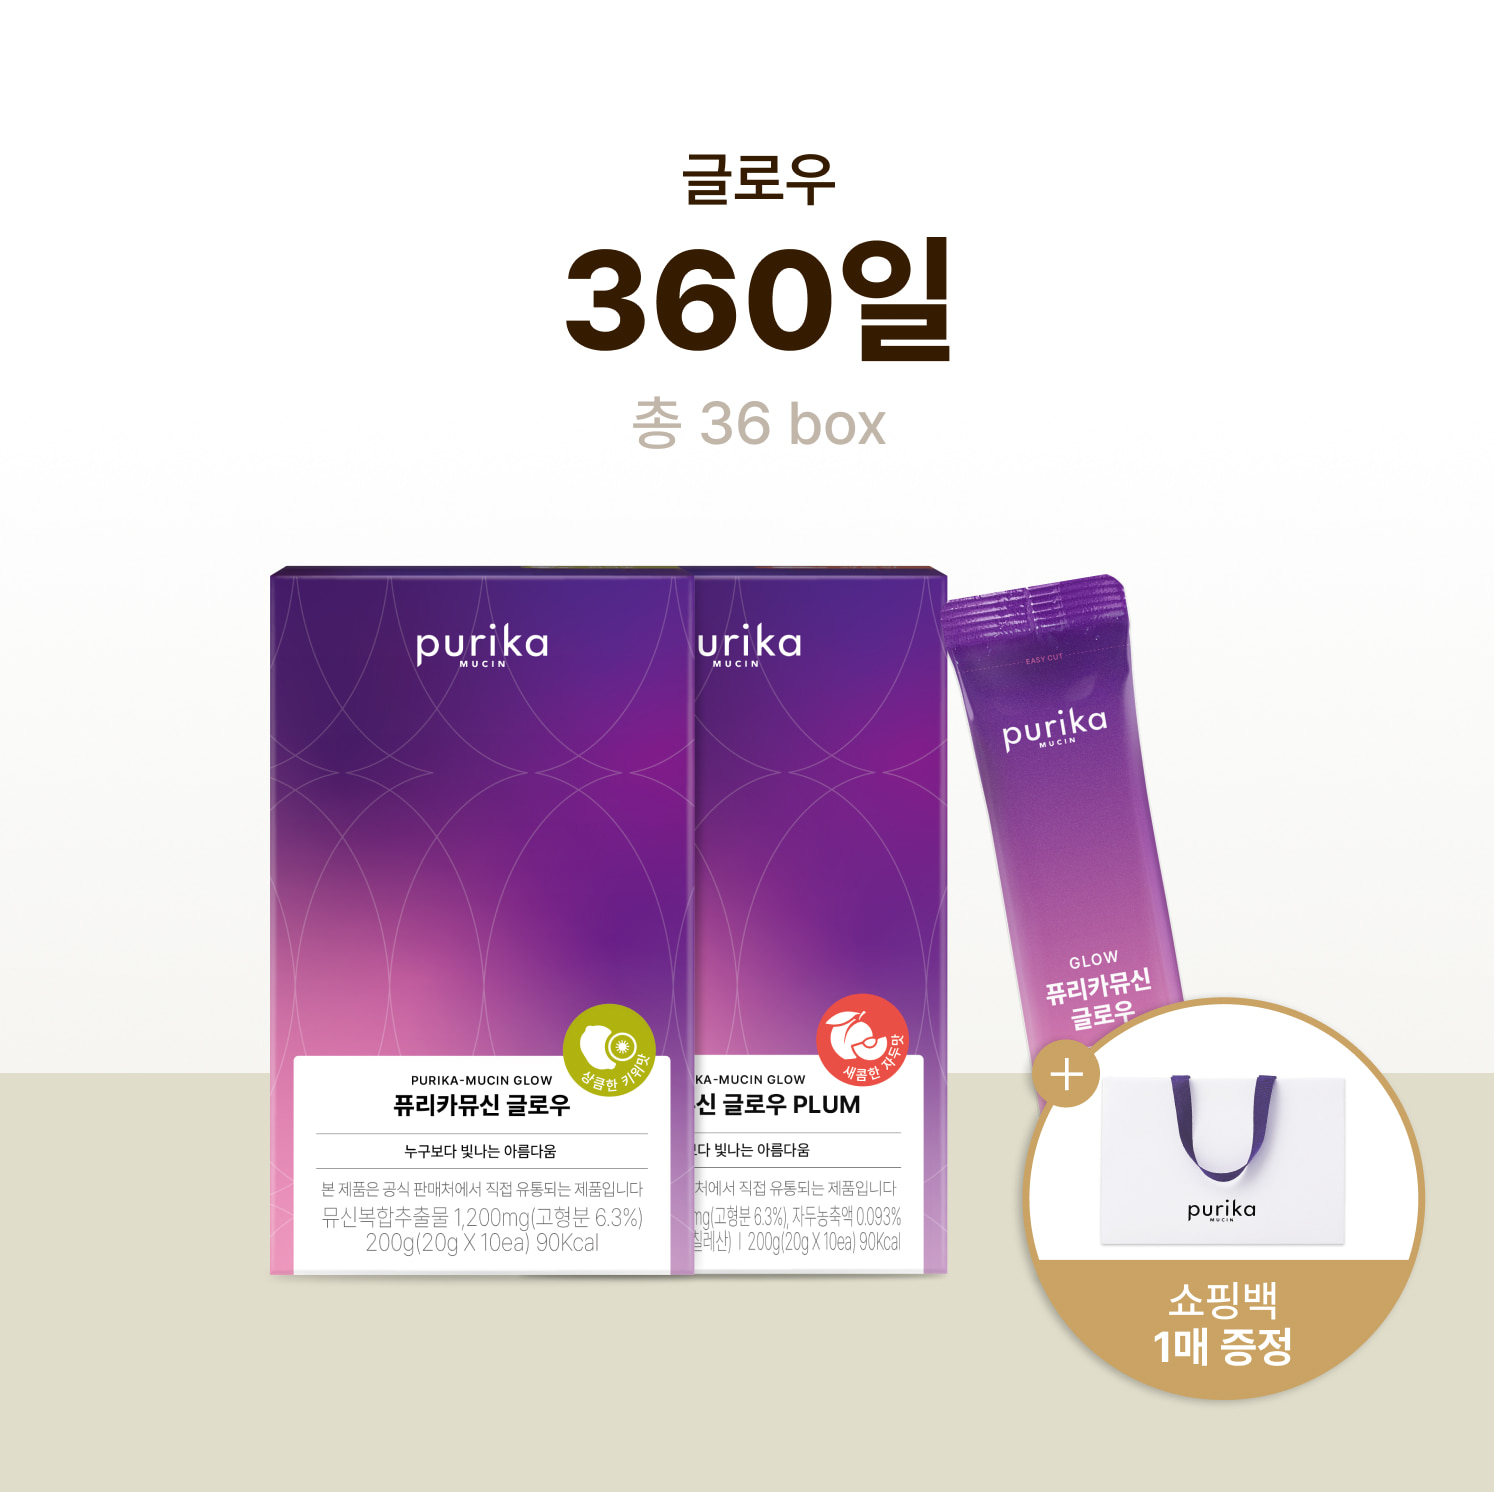 뮤신Glow (36box, 360일) + 쇼핑백 증정(1매)